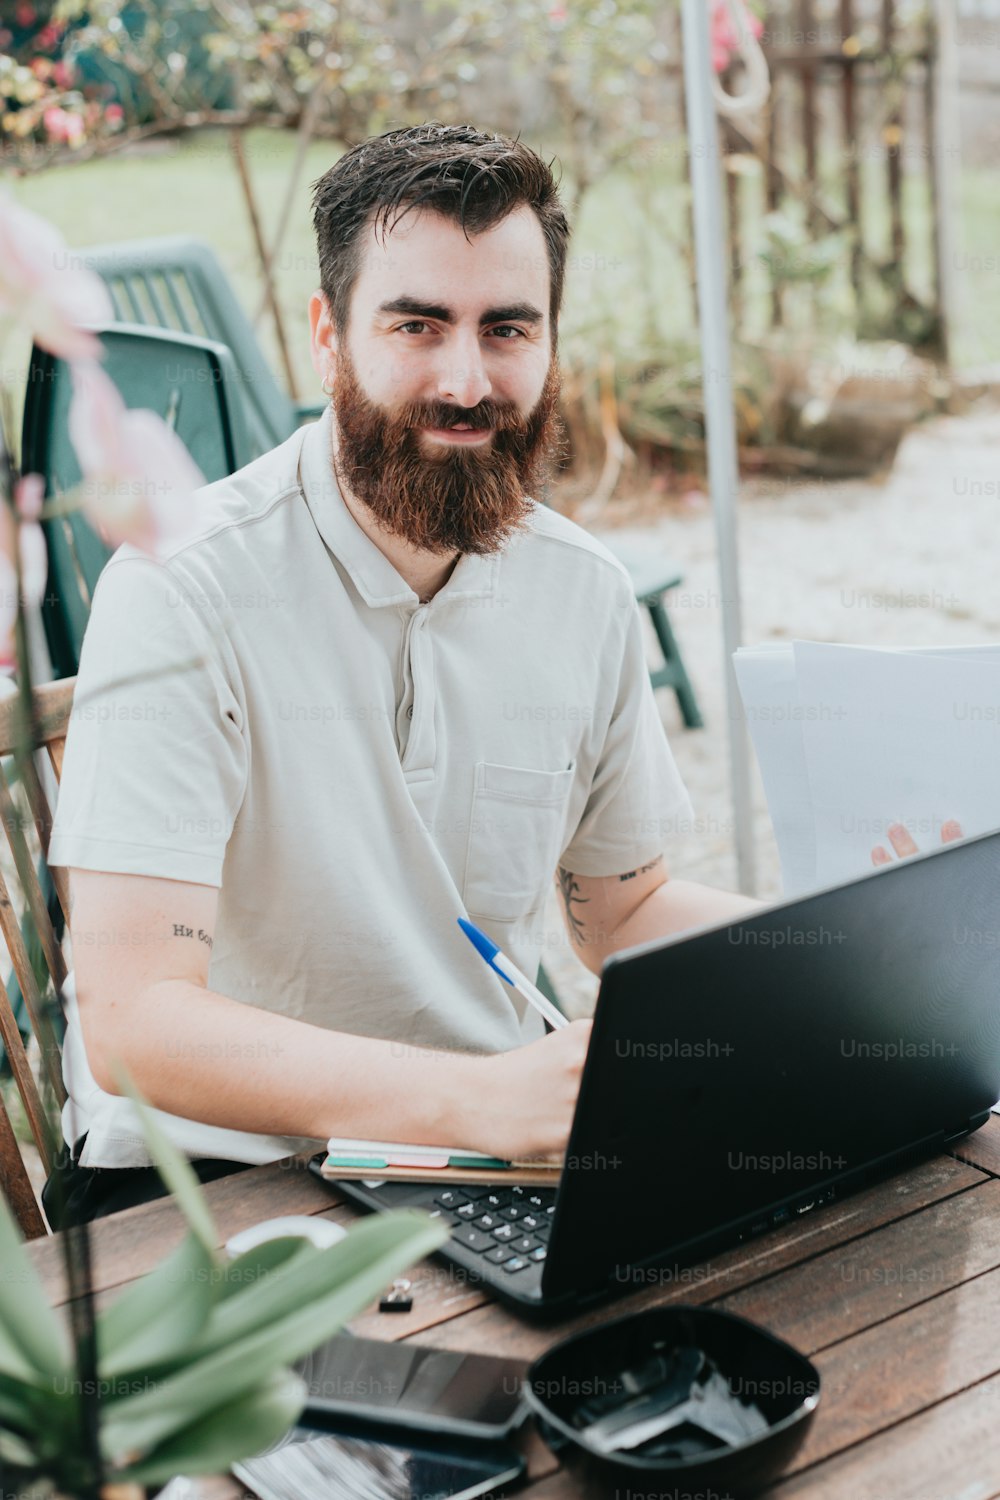 Ein Mann mit Bart, der mit einem Laptop an einem Tisch sitzt